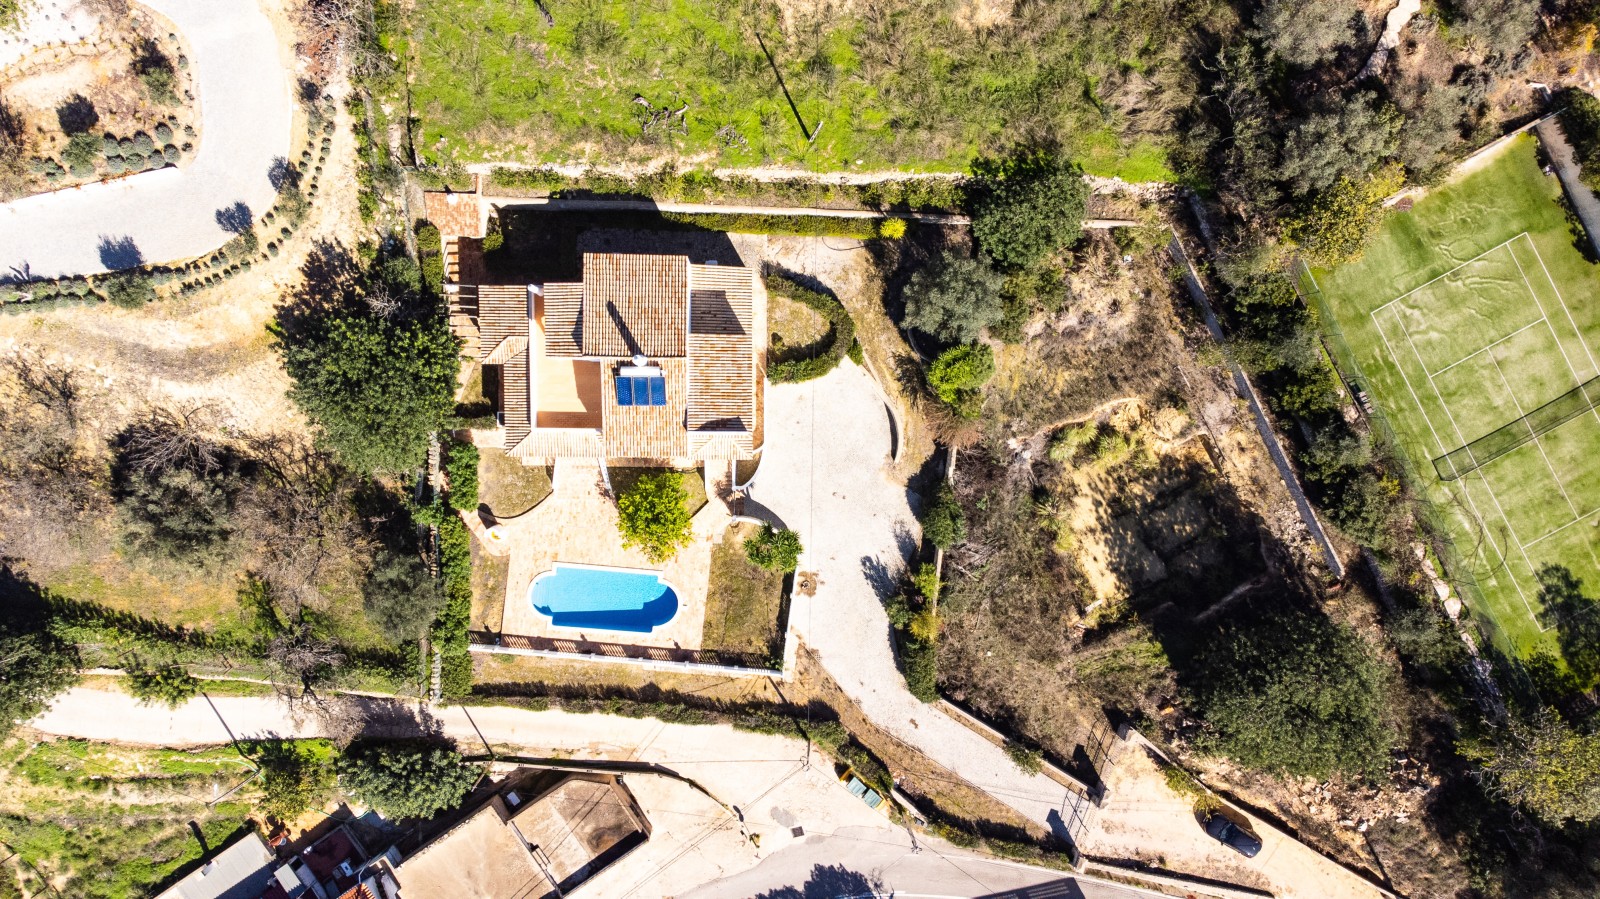 Moradia V4, com piscina, para venda, em Boliqueime, Loulé, Algarve_267415